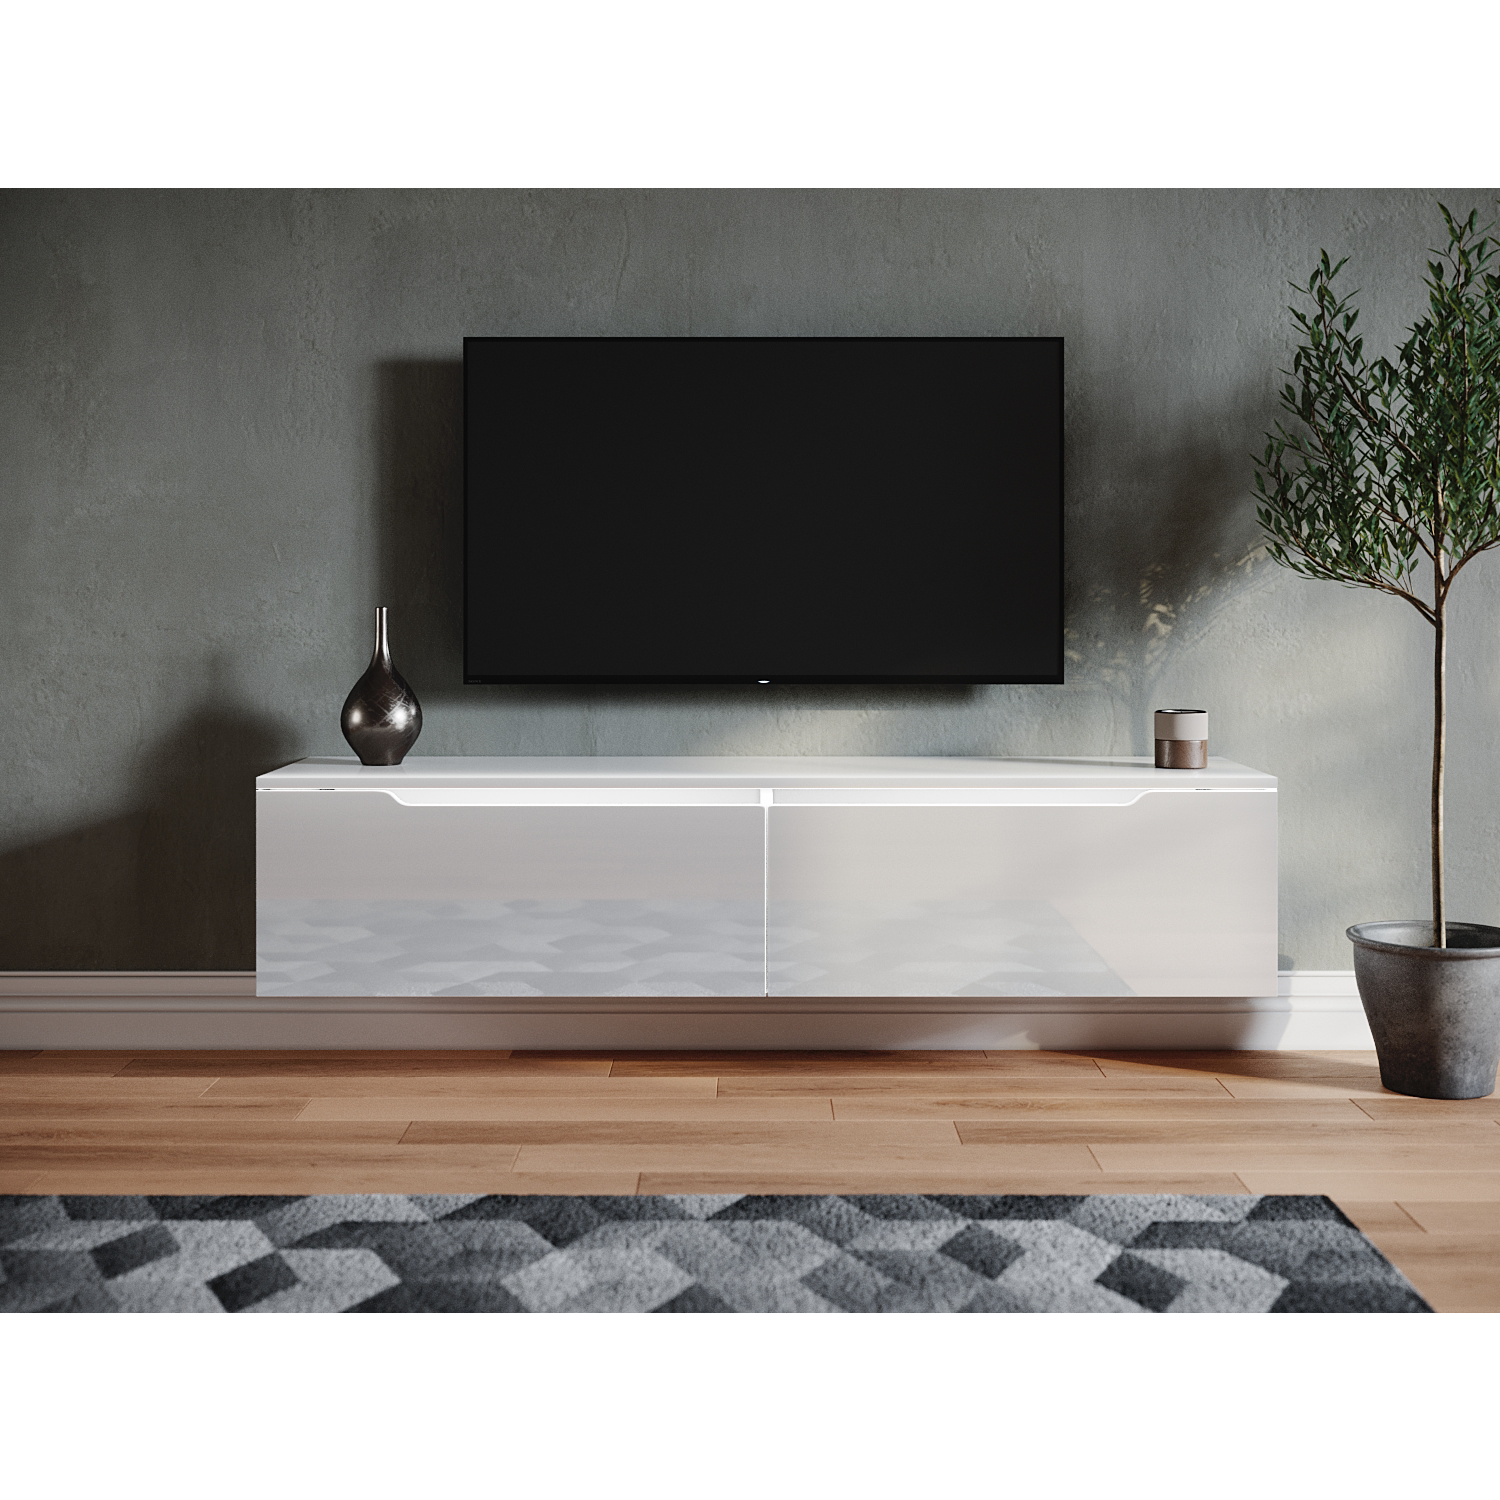 SONNI TV Schrank Weiss Hochglanz Griffloses Design TV Board mit LED-Beleuchtung Lowboard Fernseherschank 140x35x30cm für Ihr Wohnzimmer